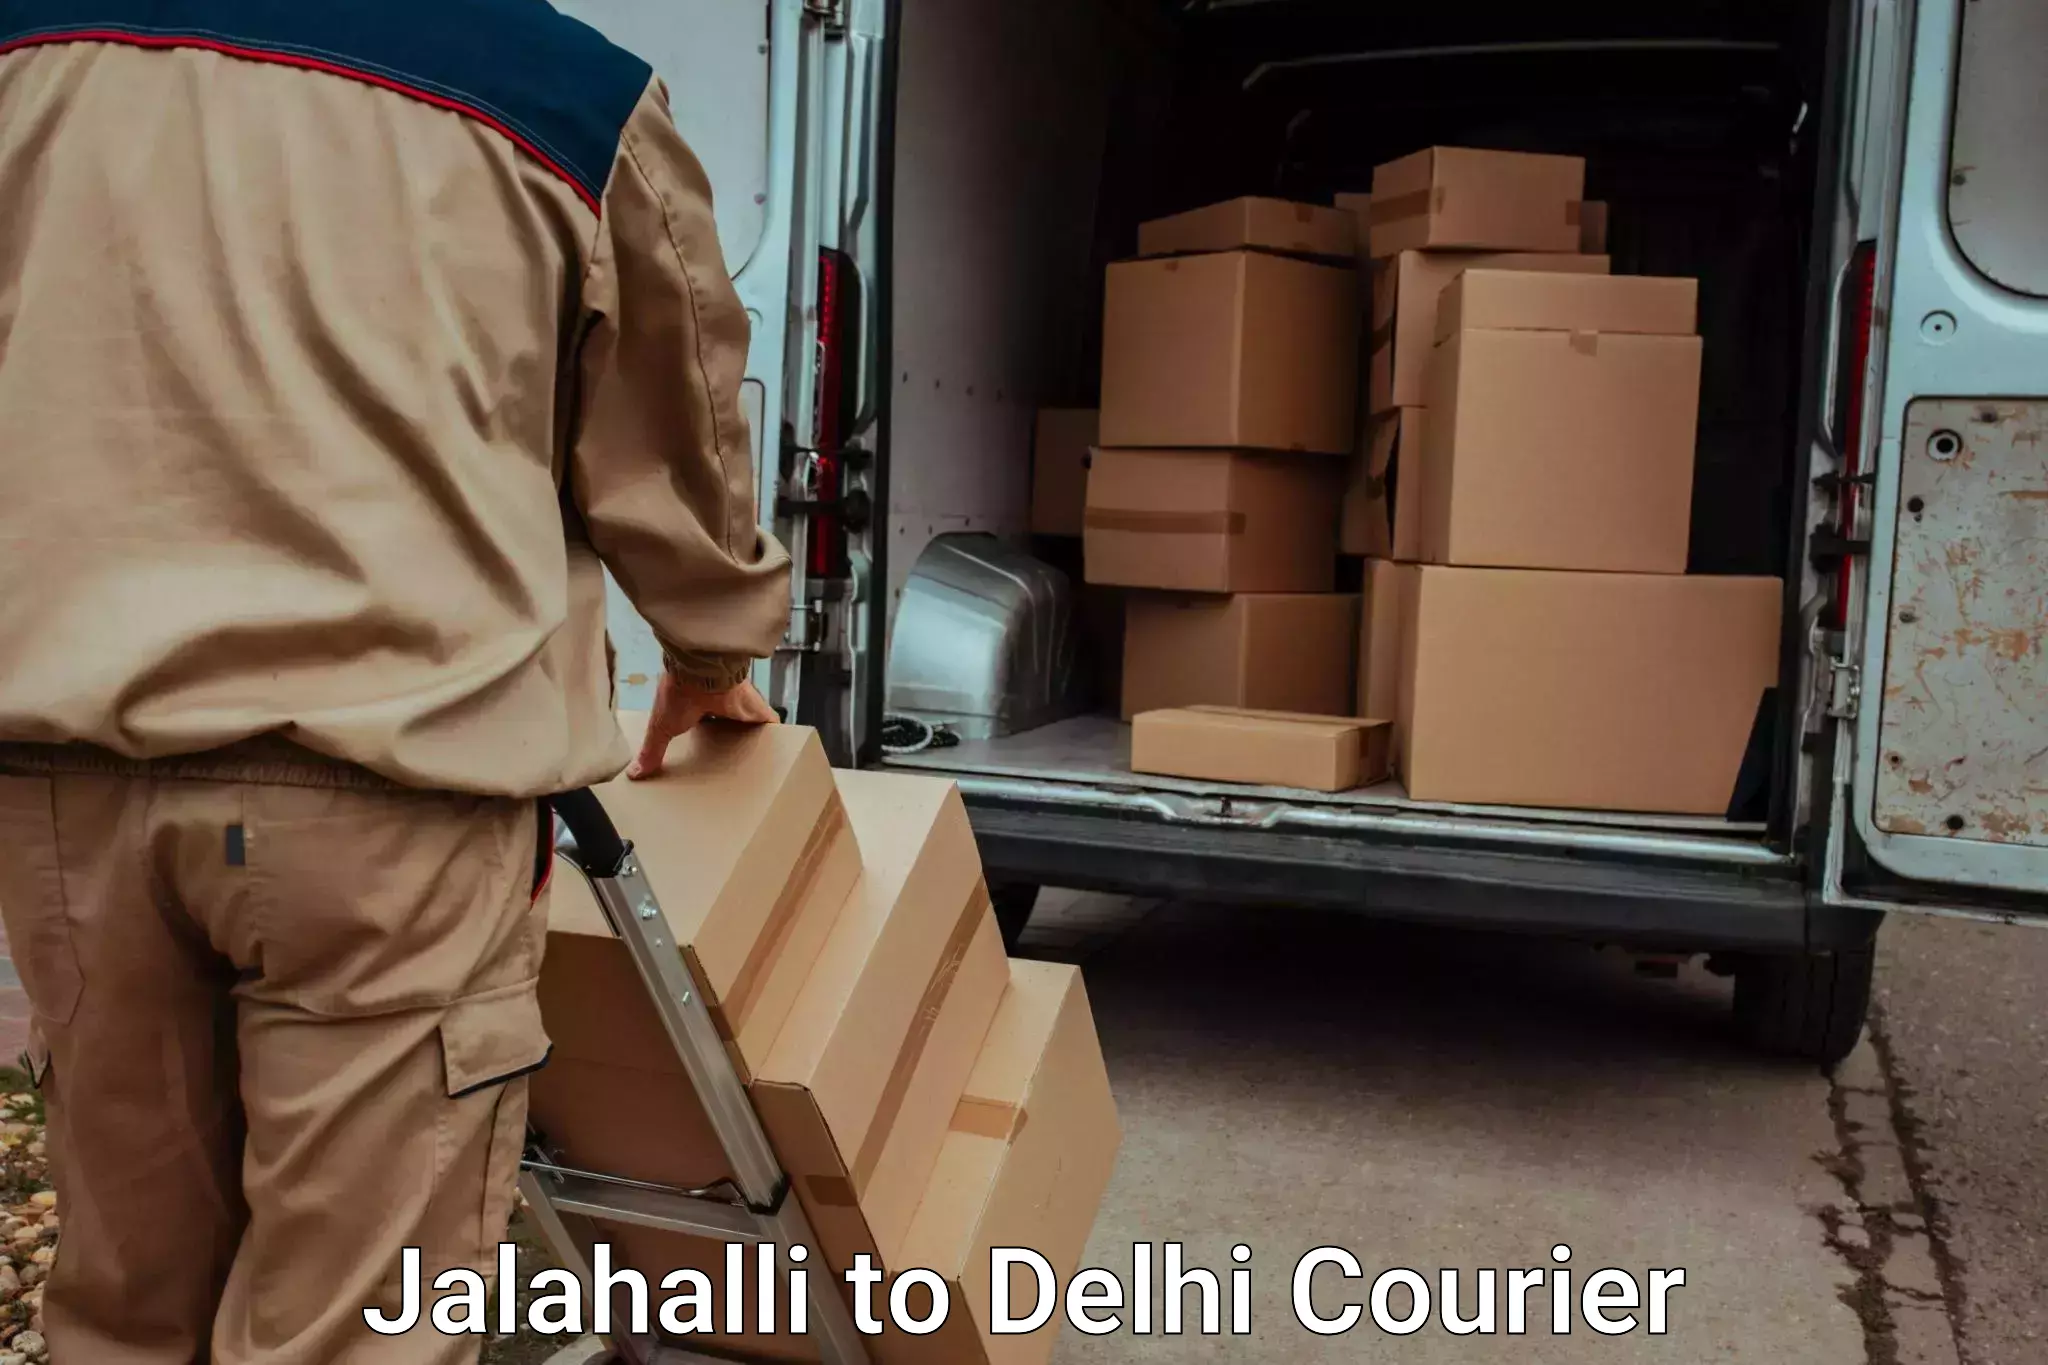 Furniture transport experts Jalahalli to Sarojini Nagar